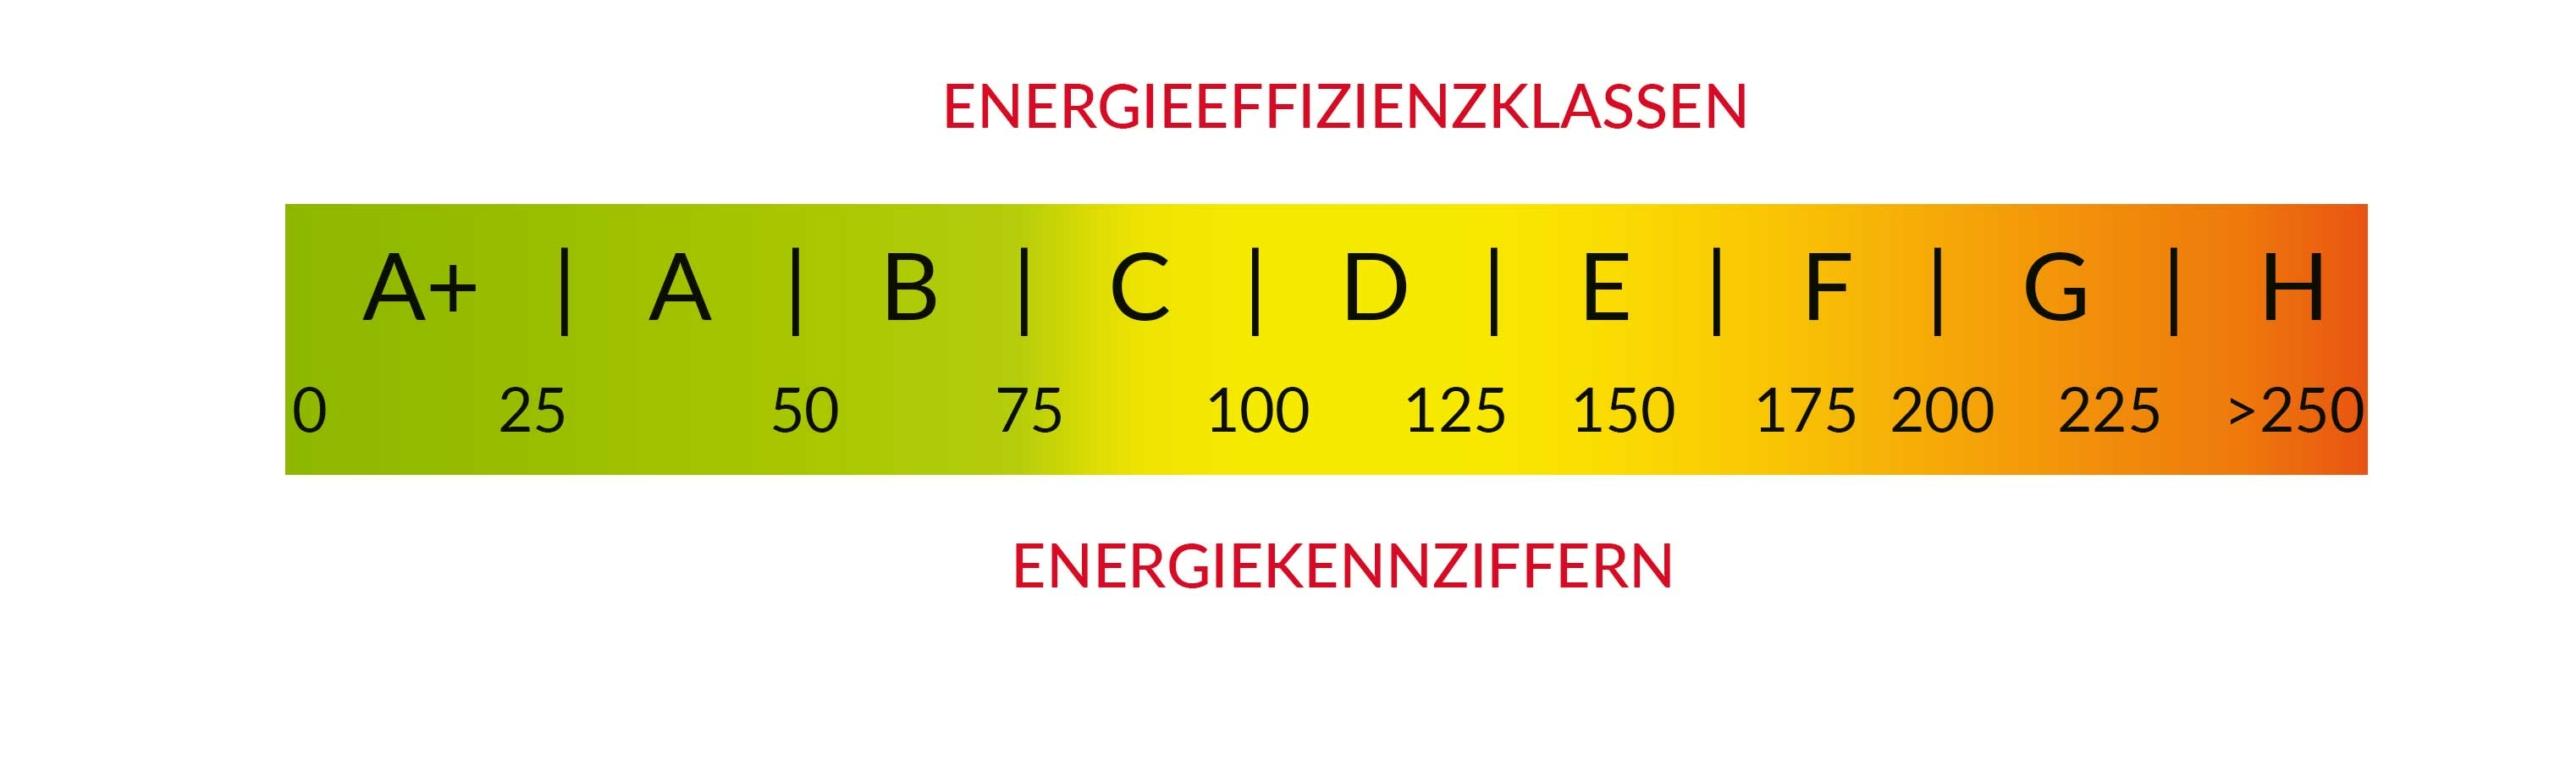 Energieeffizienzklassen und Energiekennziffern im Energieausweis.